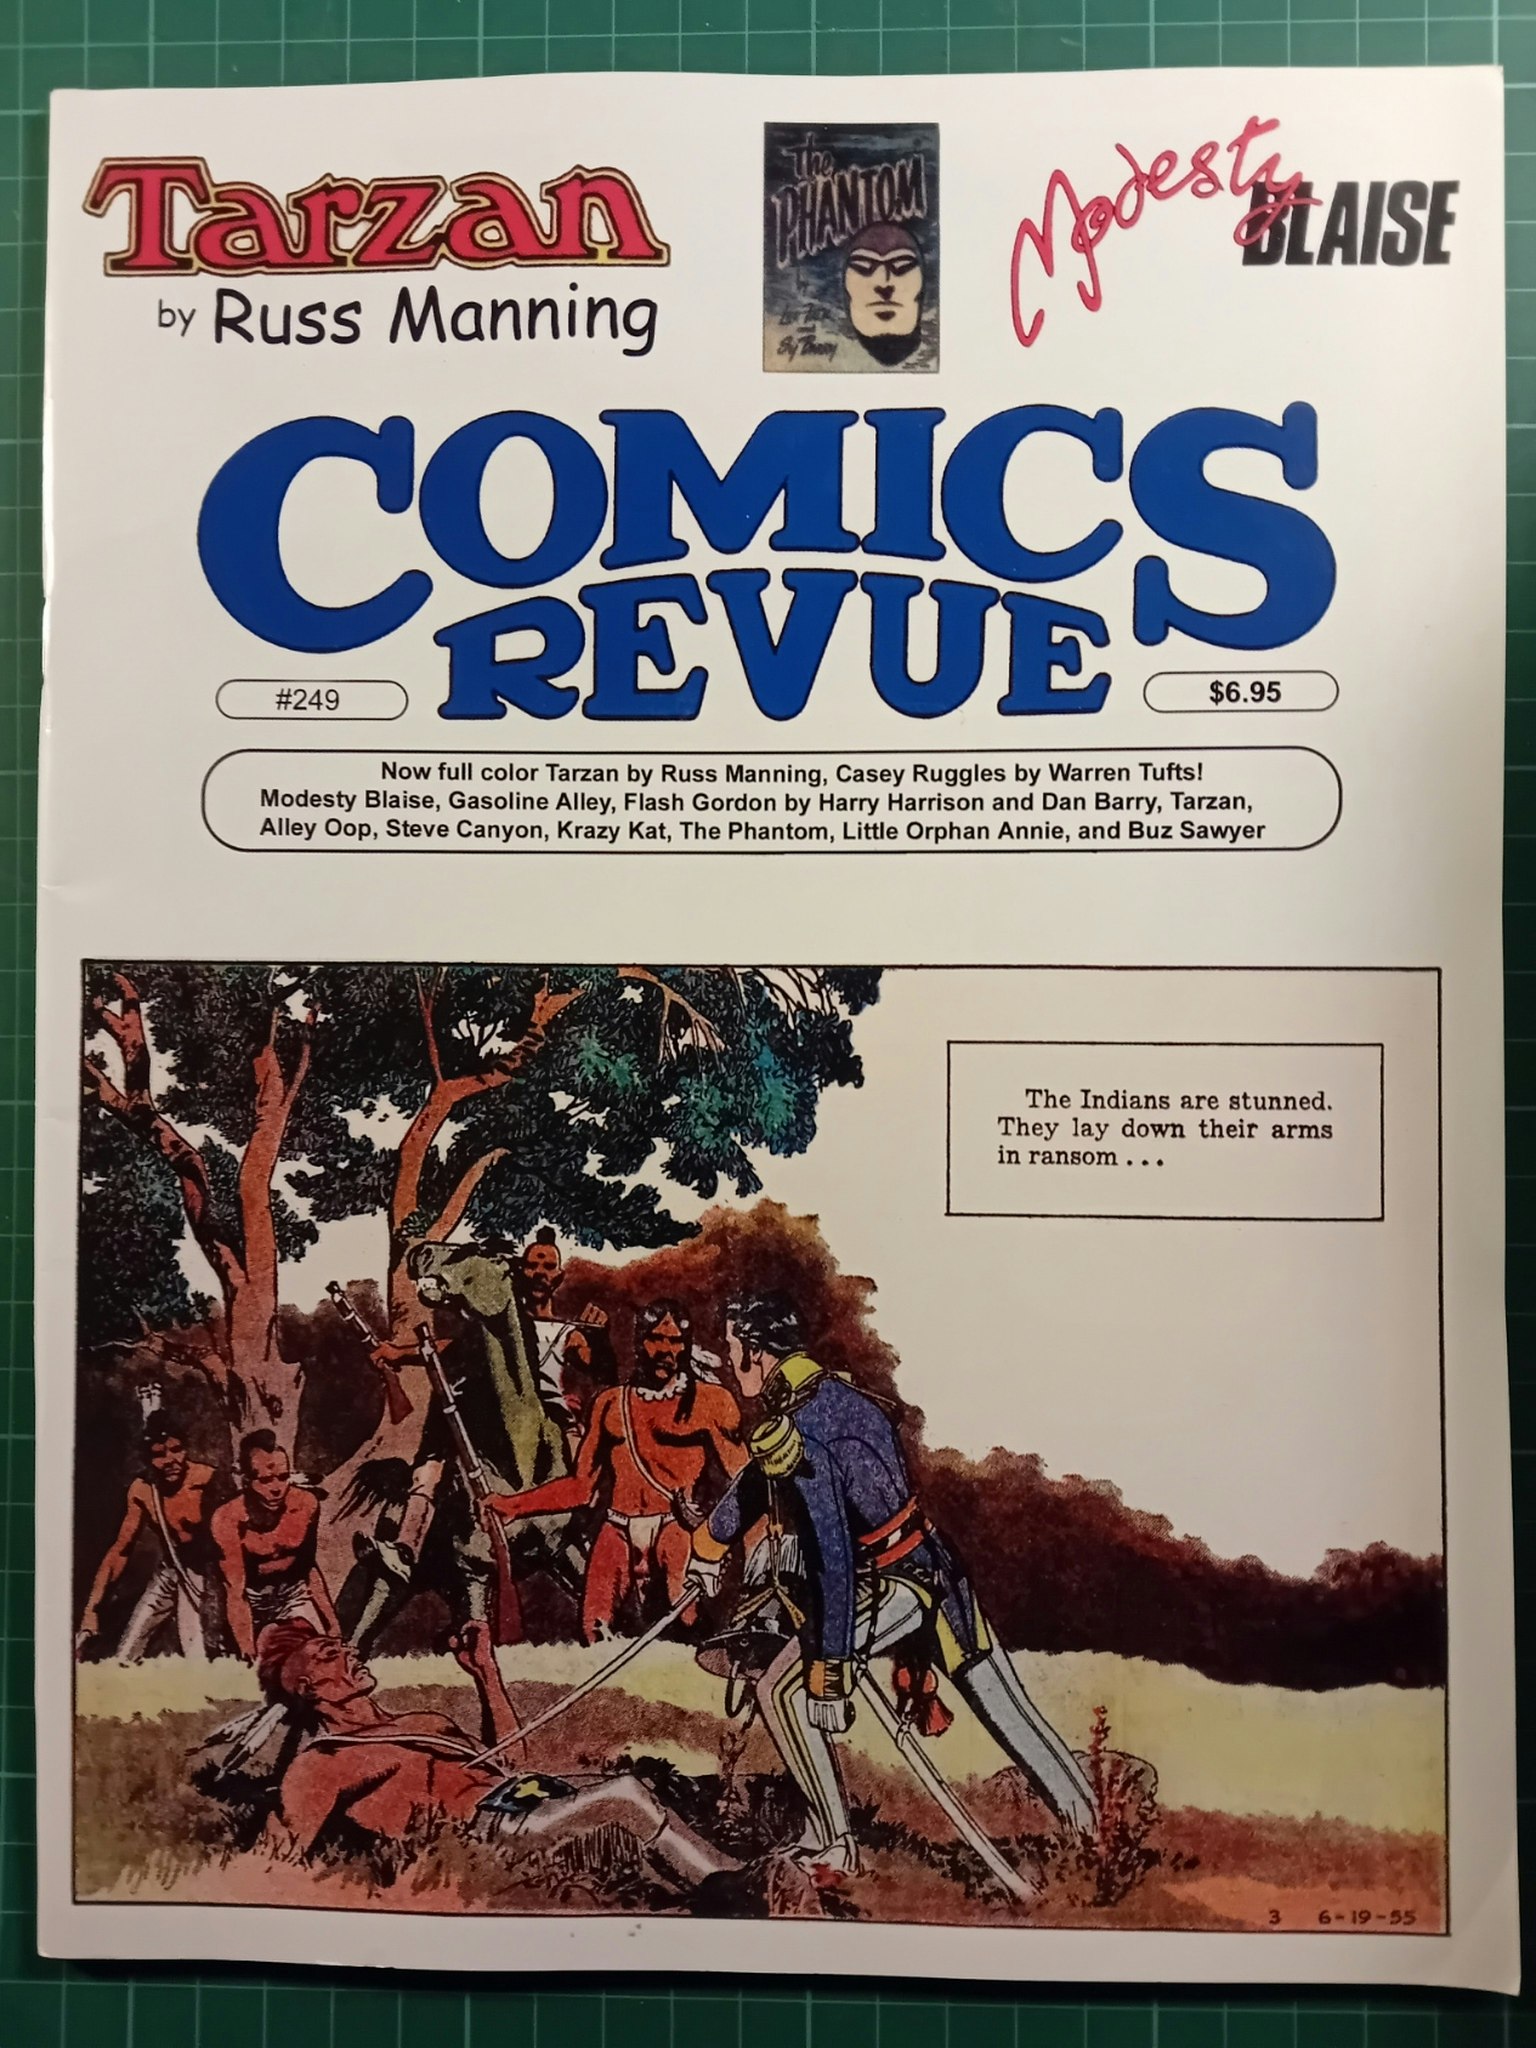 Comics revue #249